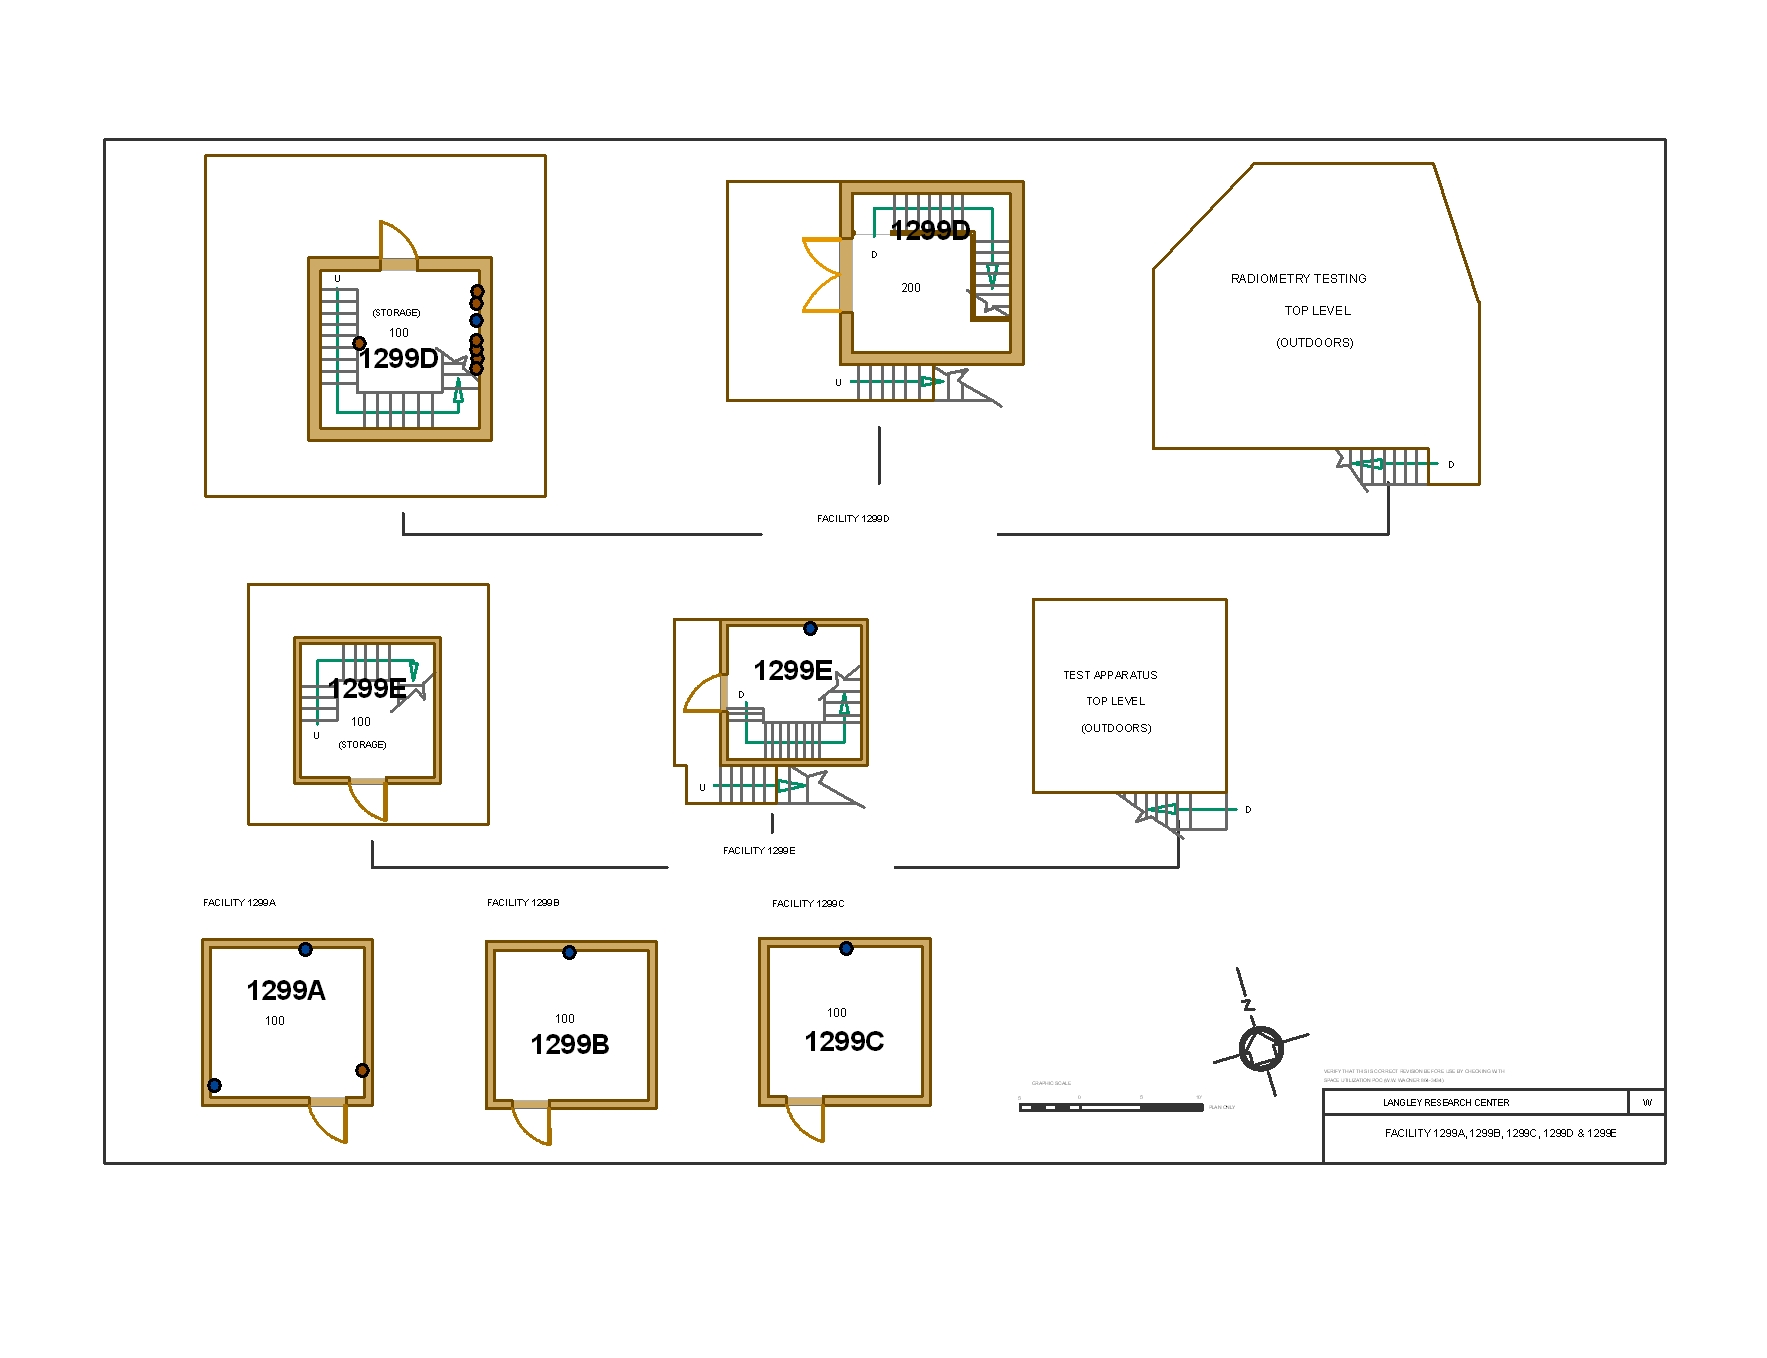 2010 Floor Plan: 2010 floor plan of the Building 1299 research complex.